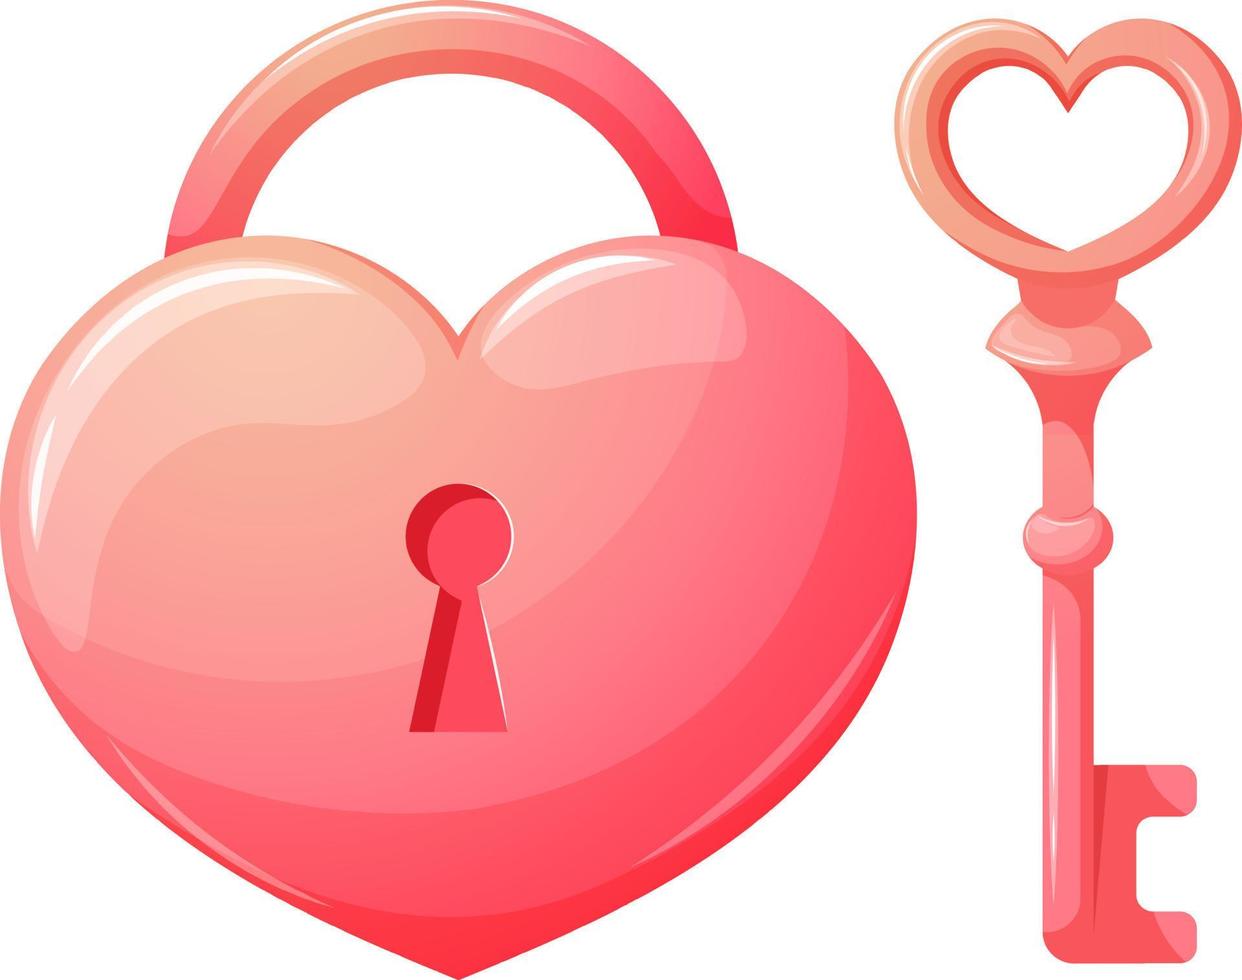 Khóa hình trái tim hoạt hình: Tìm hiểu về khóa hình trái tim hoạt hình ngộ nghĩnh và đáng yêu này, sẽ khiến trái tim bạn tan chảy. Với hình dáng đáng yêu và màu sắc sặc sỡ, khóa này không chỉ giúp bảo vệ tài sản của bạn mà còn mang lại cảm giác lãng mạn cho chiếc chìa khóa của bạn.